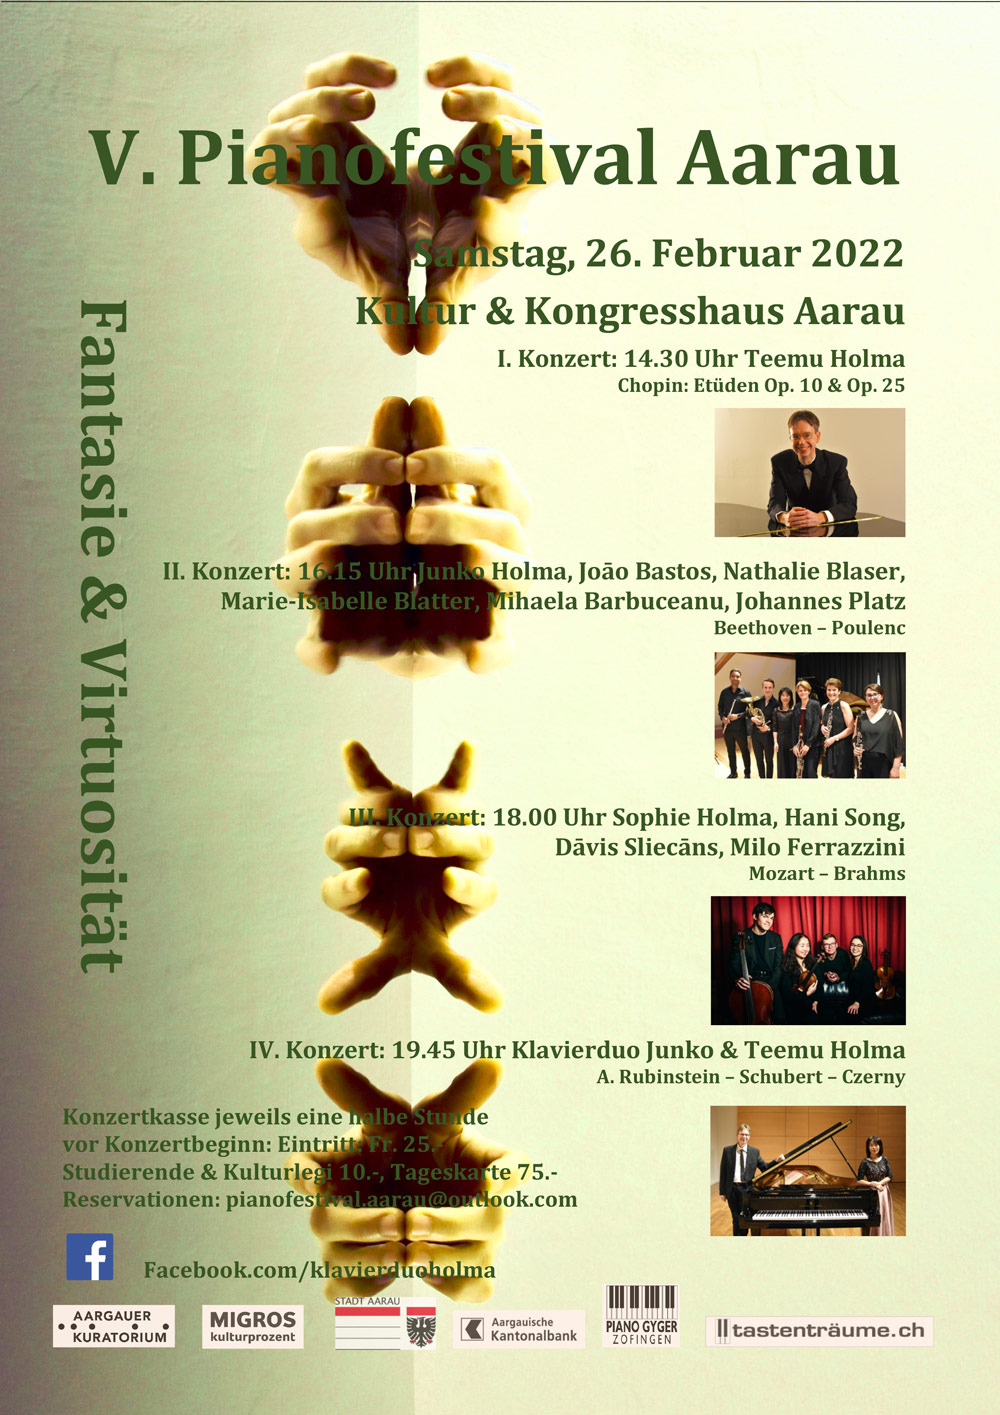 V. Pianofestival Aarau 2022